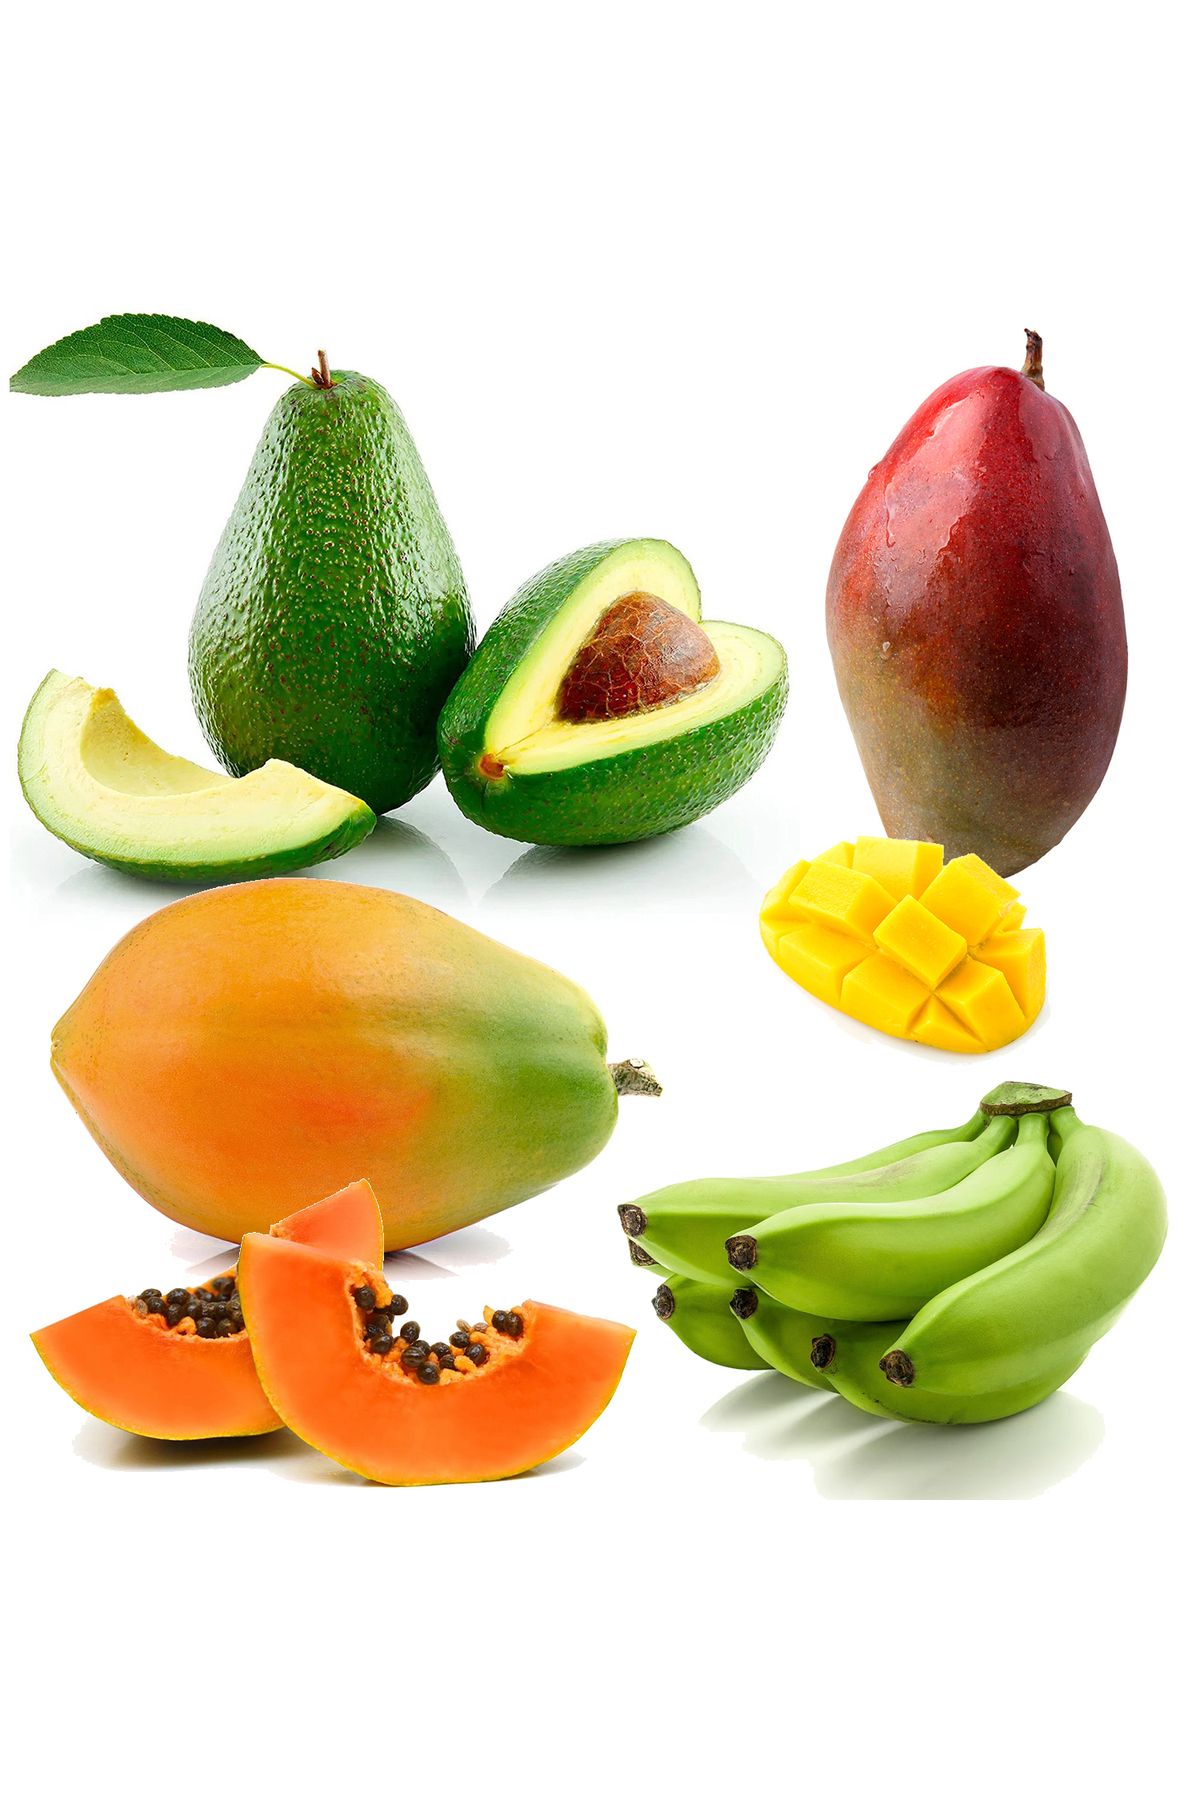 Gülen Bahçe Egzotik Meyveler Paketi - Mango, Papaya, Avokado, Muz Karışık Paket - Doğal Dalından